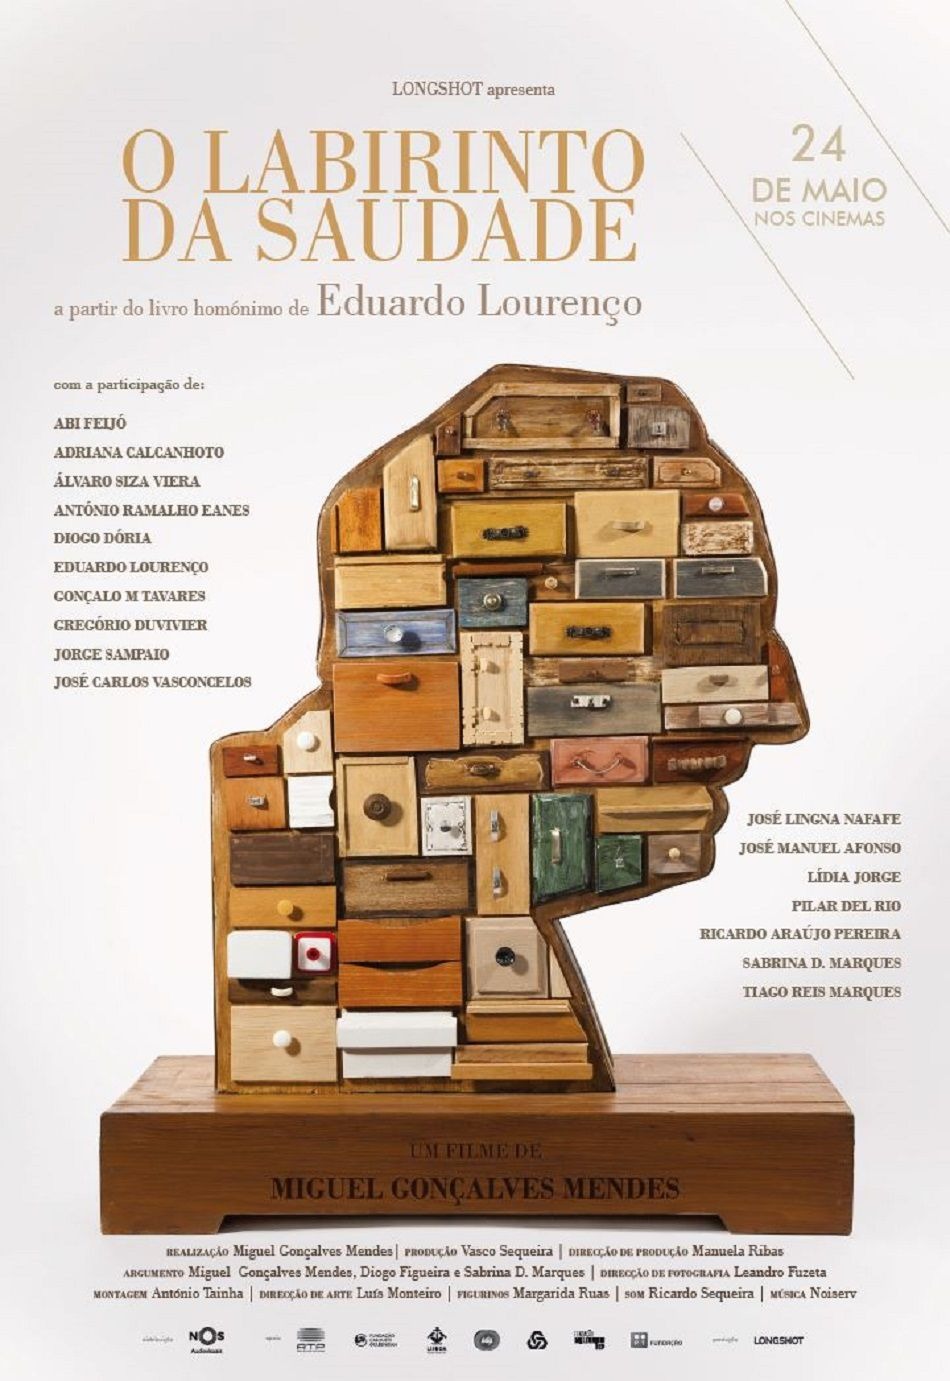 Extra Large Movie Poster Image for O Labirinto da Saudade 